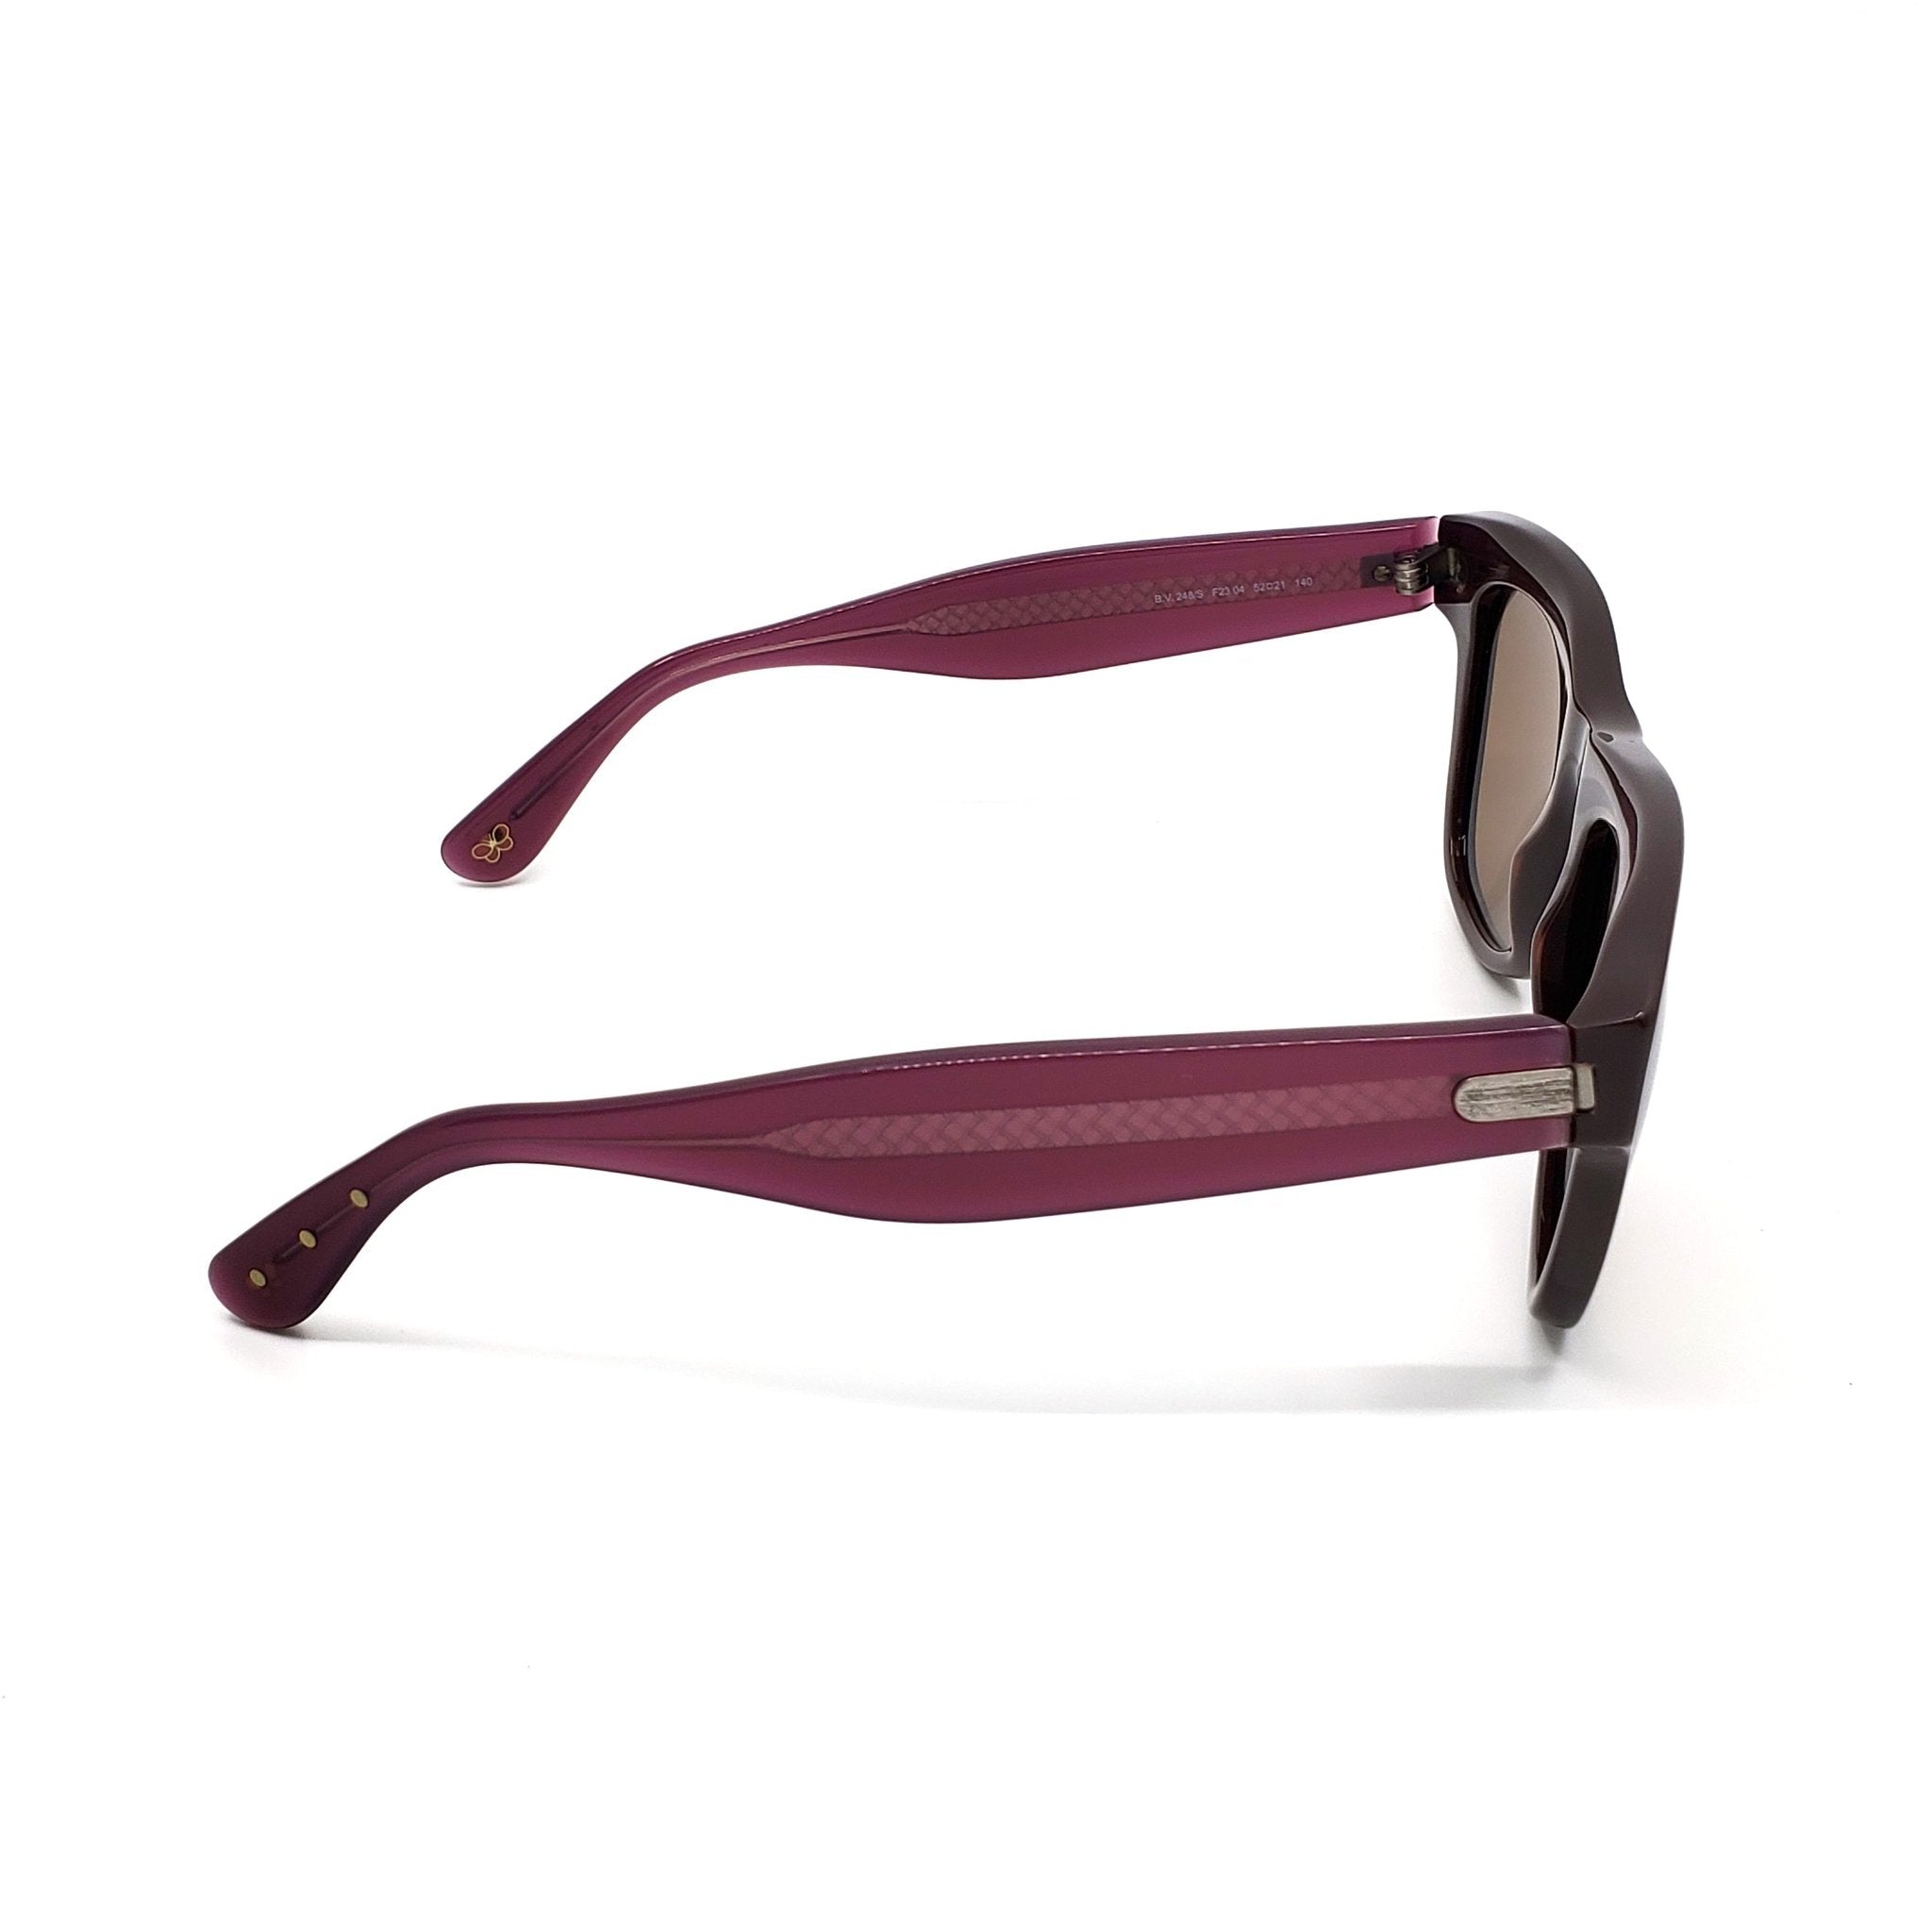 Bottega Veneta Sunglasses - 248S